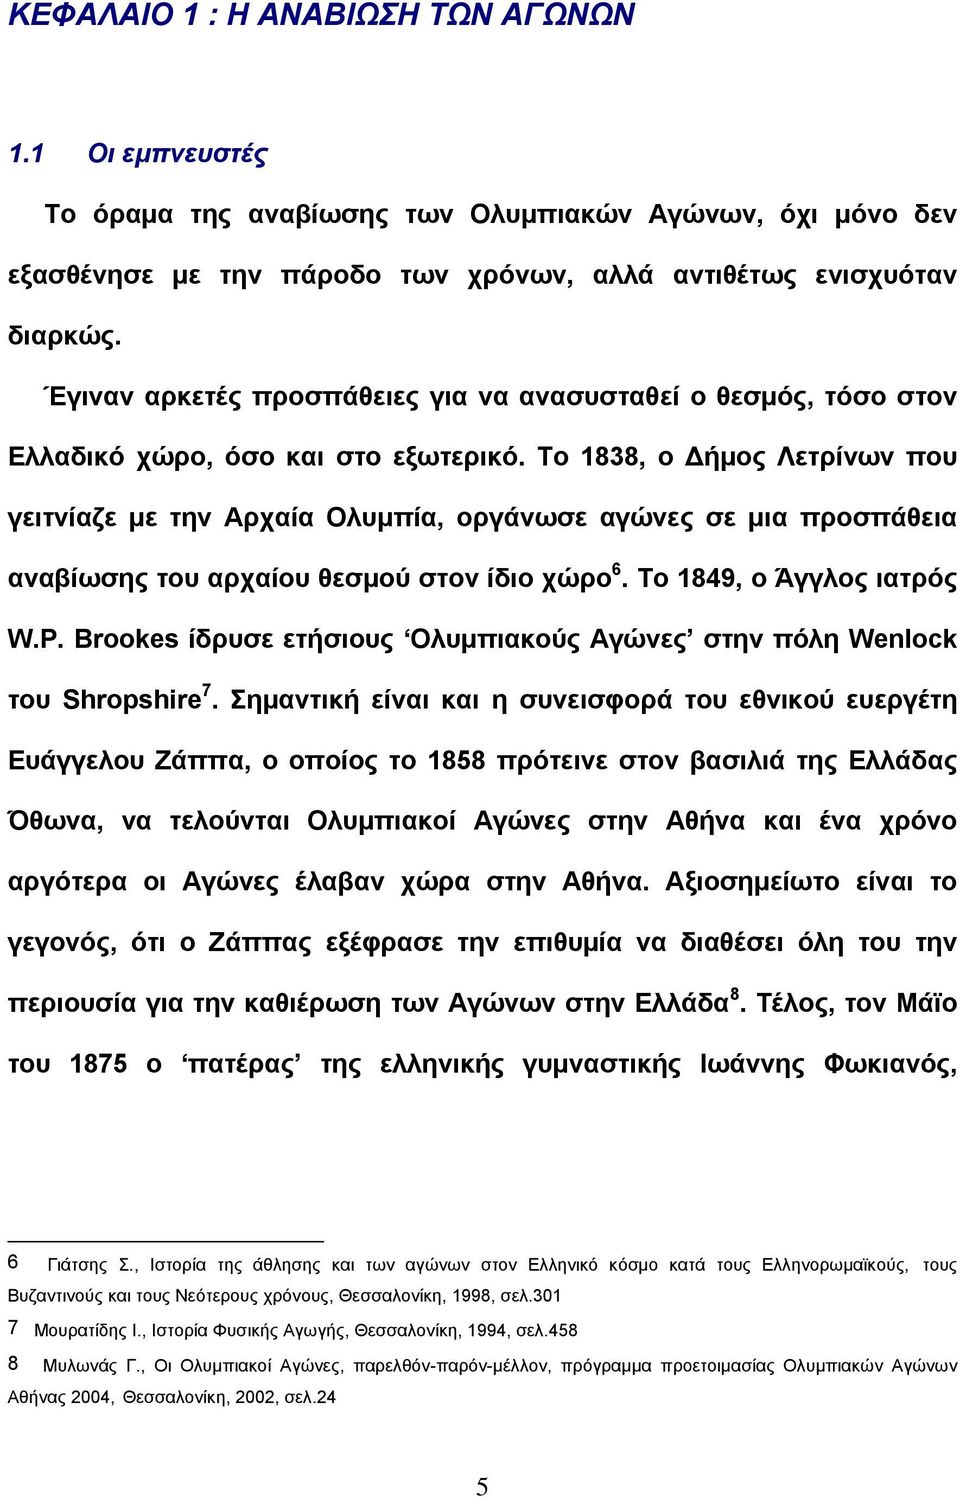 Το 1838, ο Δήμος Λετρίνων που γειτνίαζε με την Αρχαία Ολυμπία, οργάνωσε αγώνες σε μια προσπάθεια αναβίωσης του αρχαίου θεσμού στον ίδιο χώρο 6. Το 1849, ο Άγγλος ιατρός W.P.